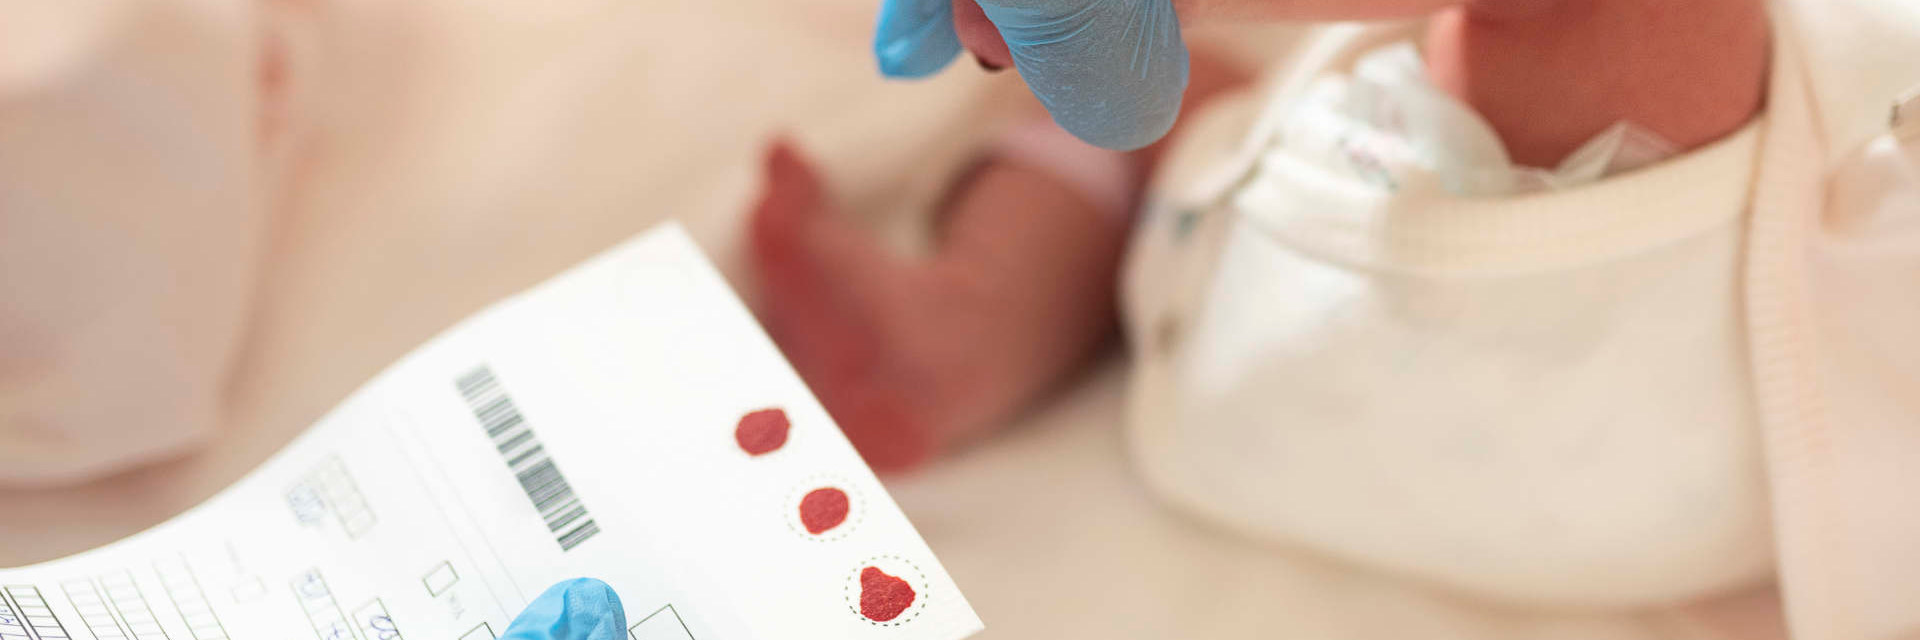 Les nouveau-nés de l’Alberta peuvent subir un dépistage de l’amyotrophie spinale dans le cadre d’un projet pilote en collaboration avec DMC